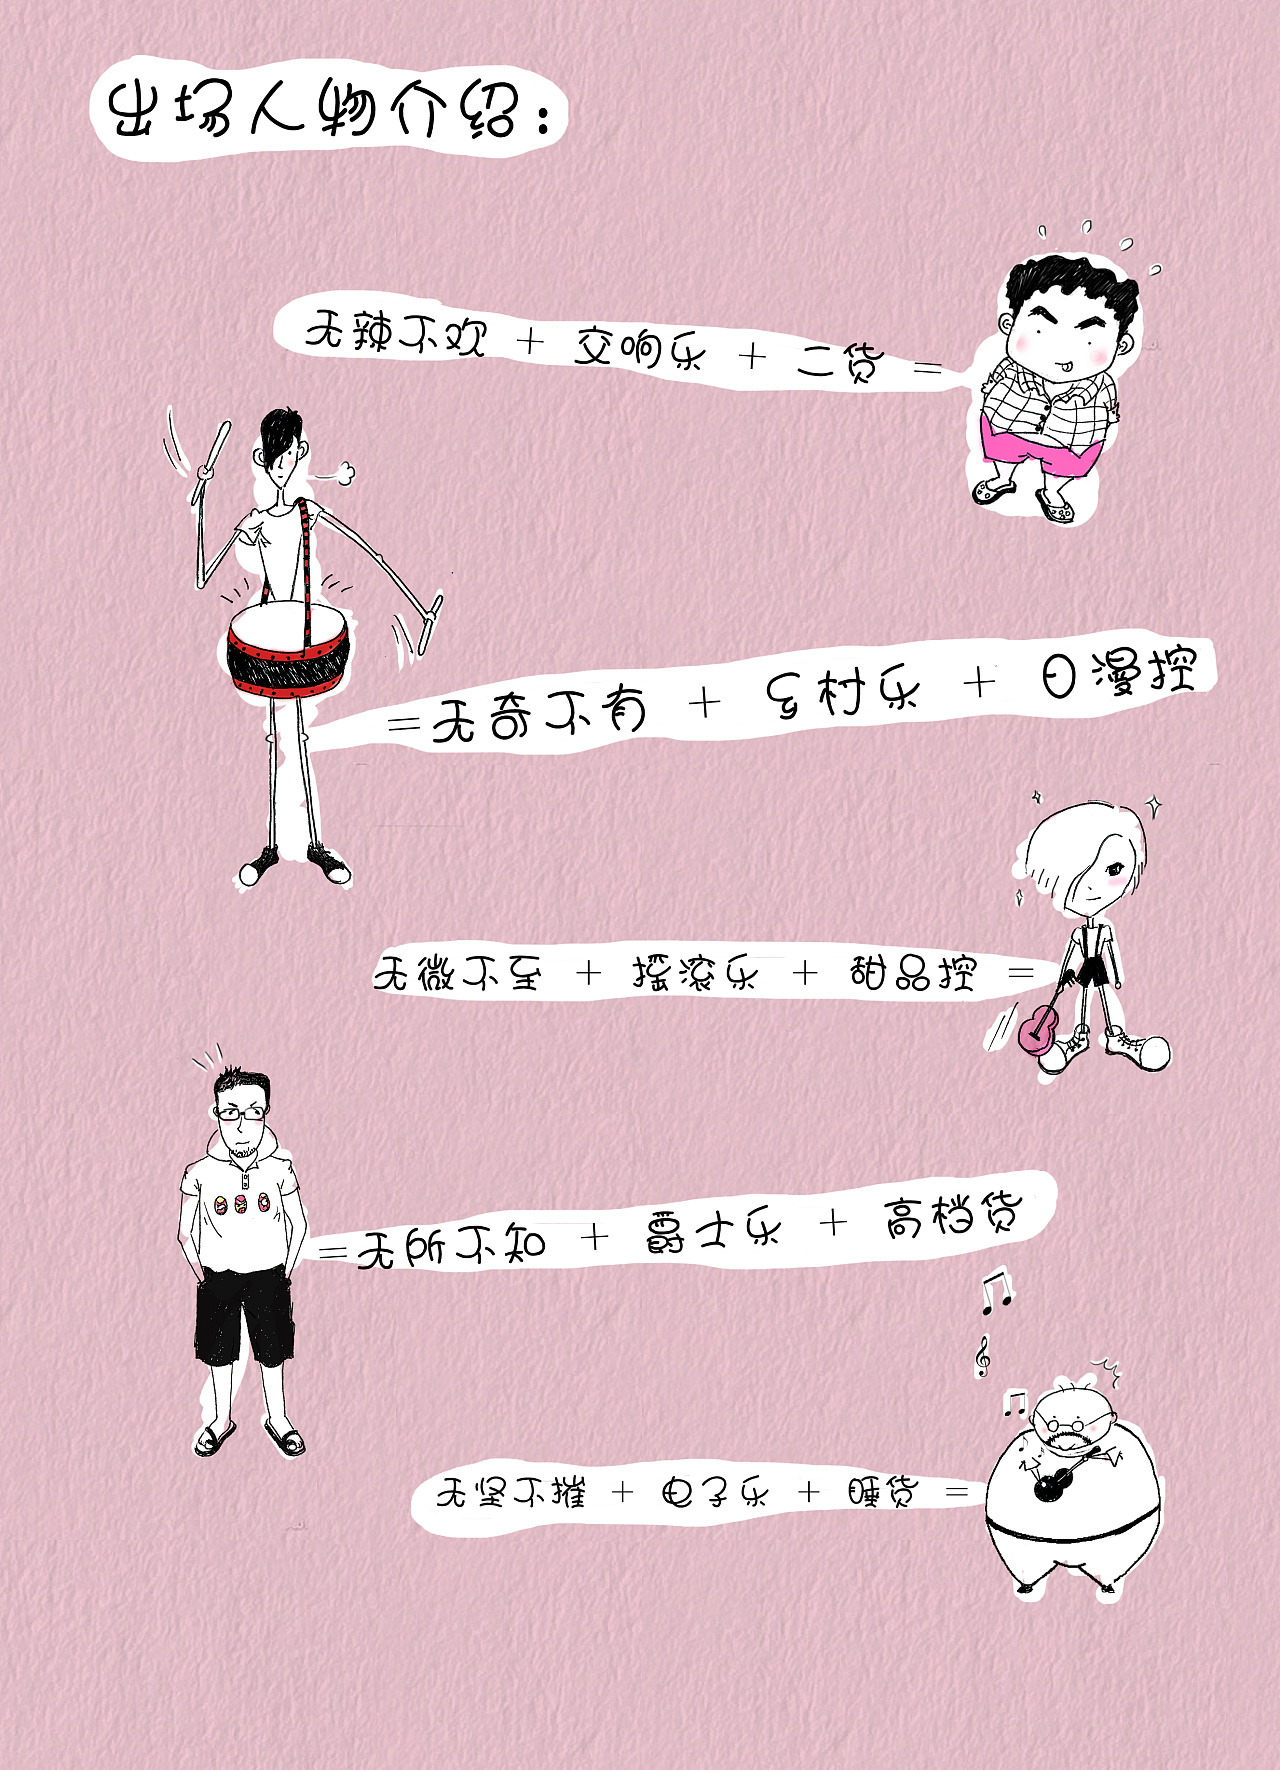 【冰室汉化组】漫画汉化教程从入门到入土(第一、二章) - 哔哩哔哩